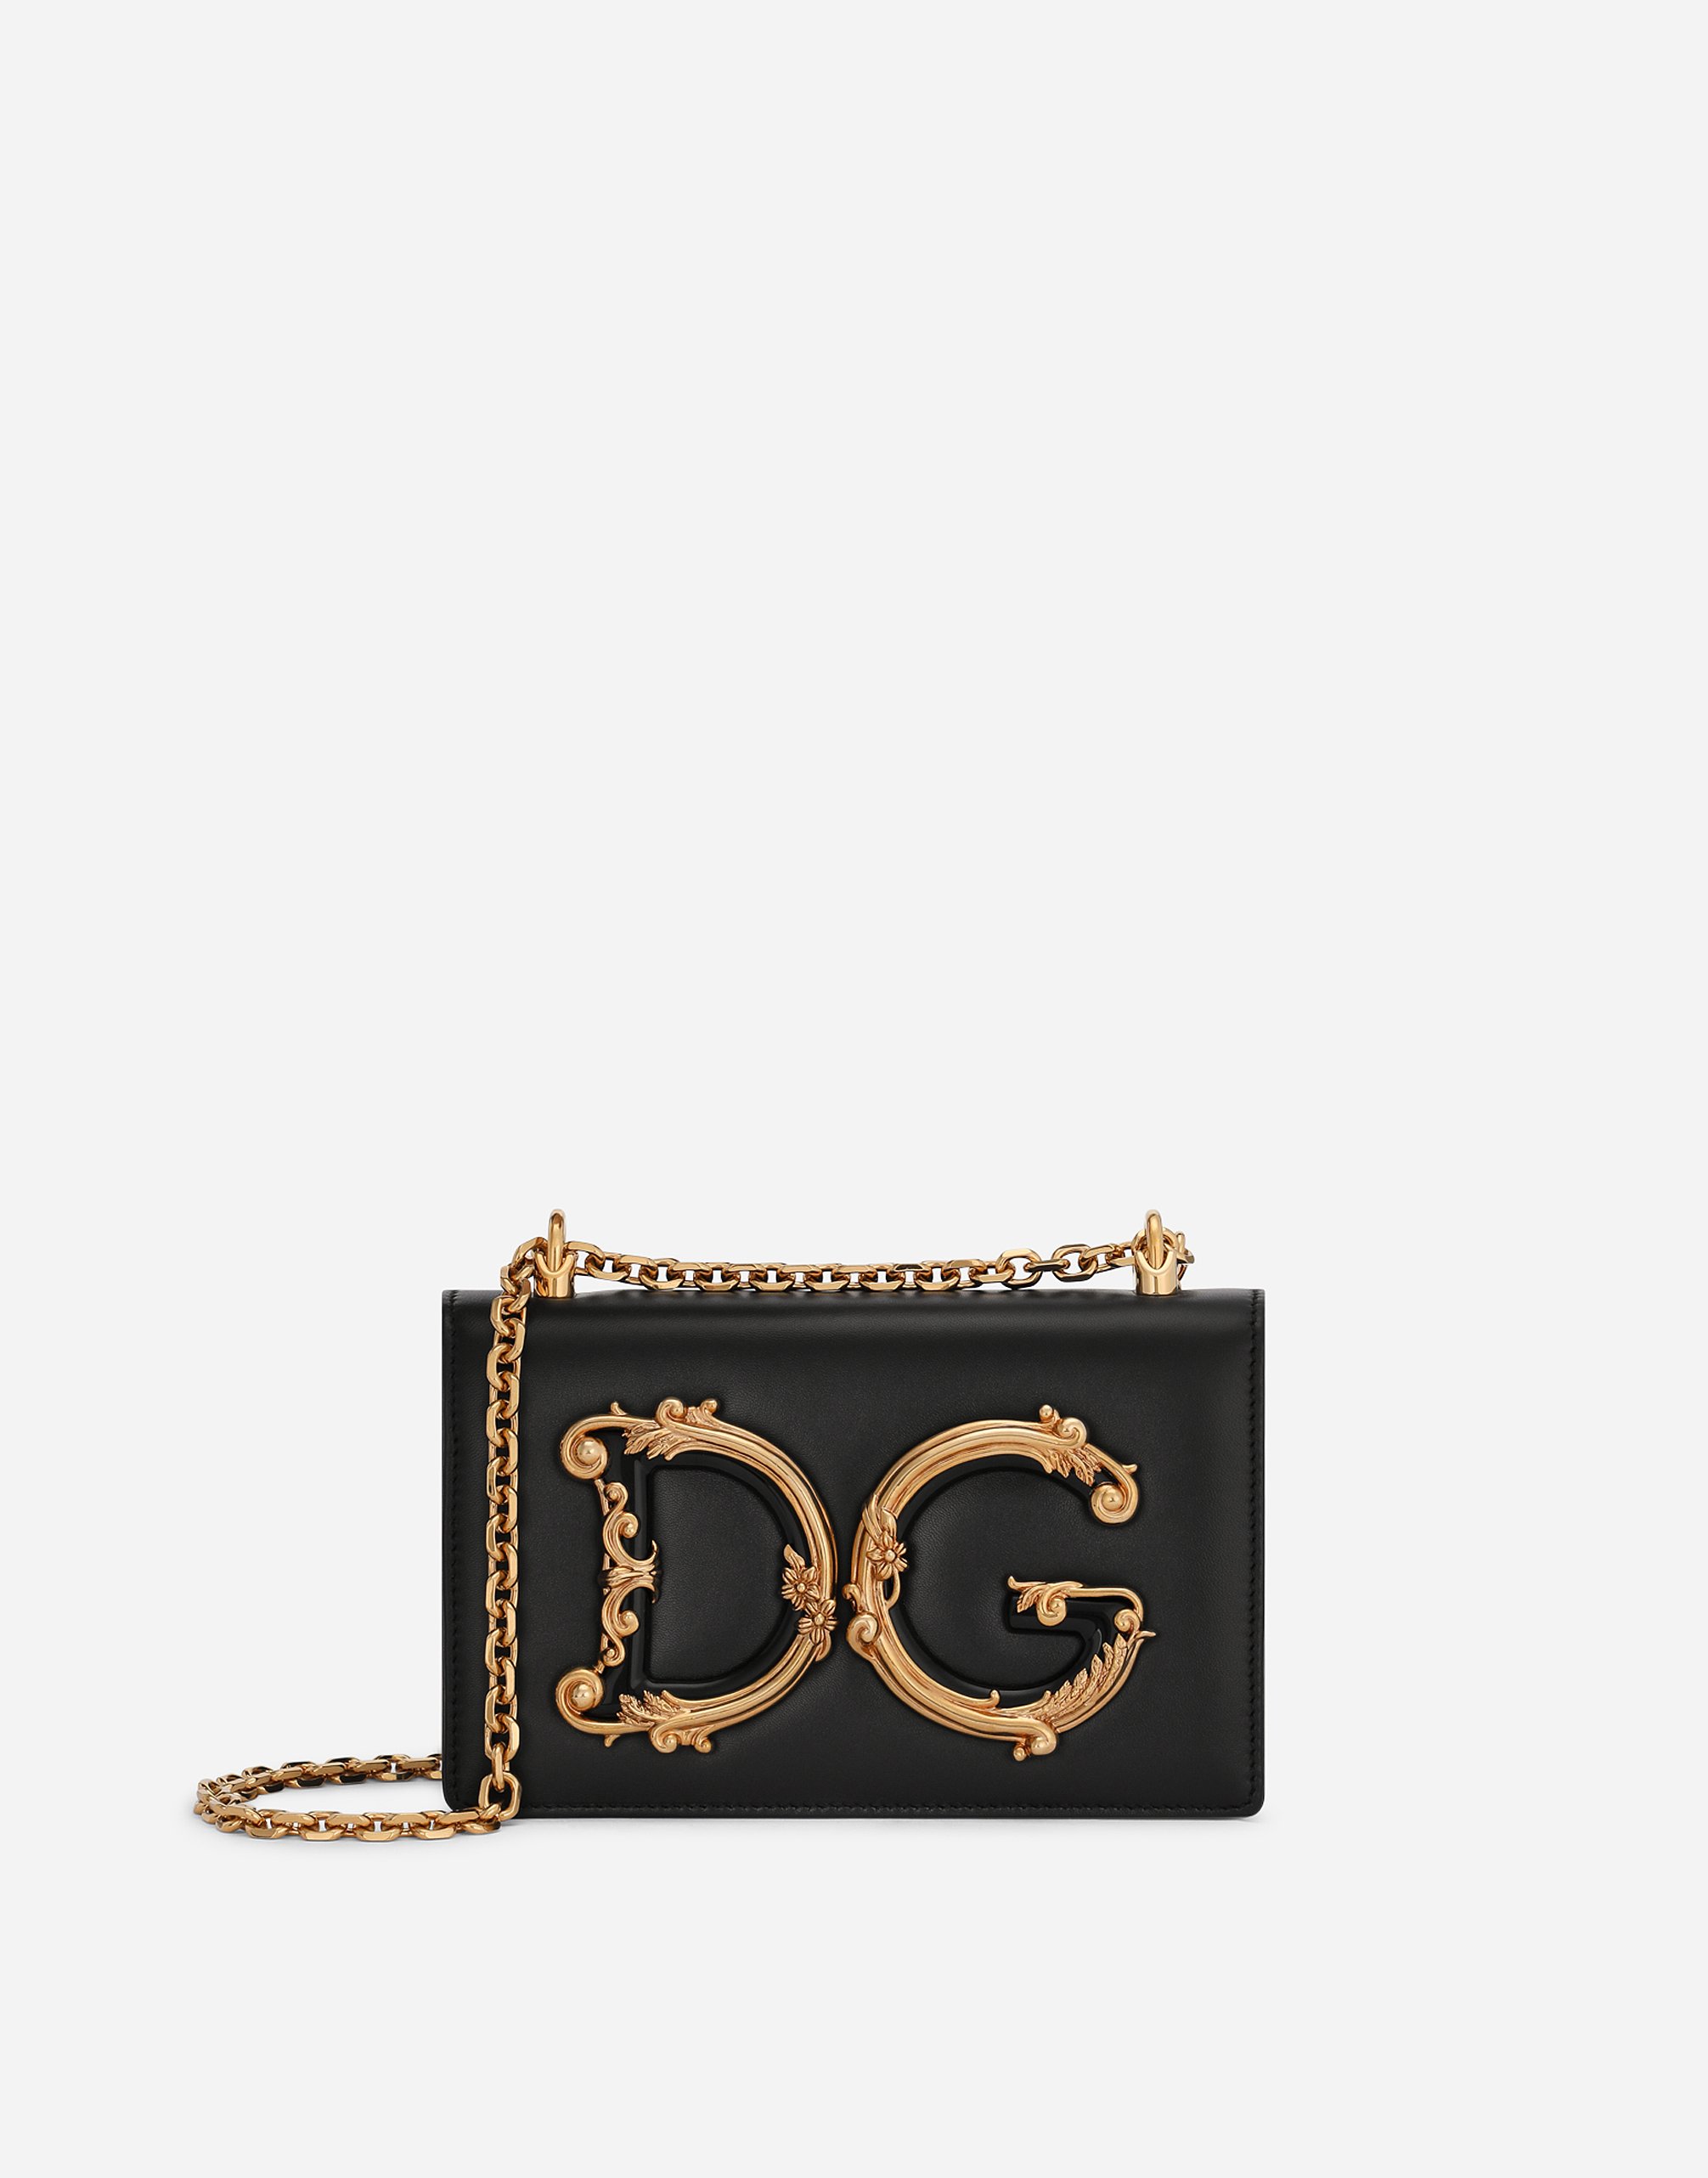 Nappa leather DG Girls shoulder bag in Black